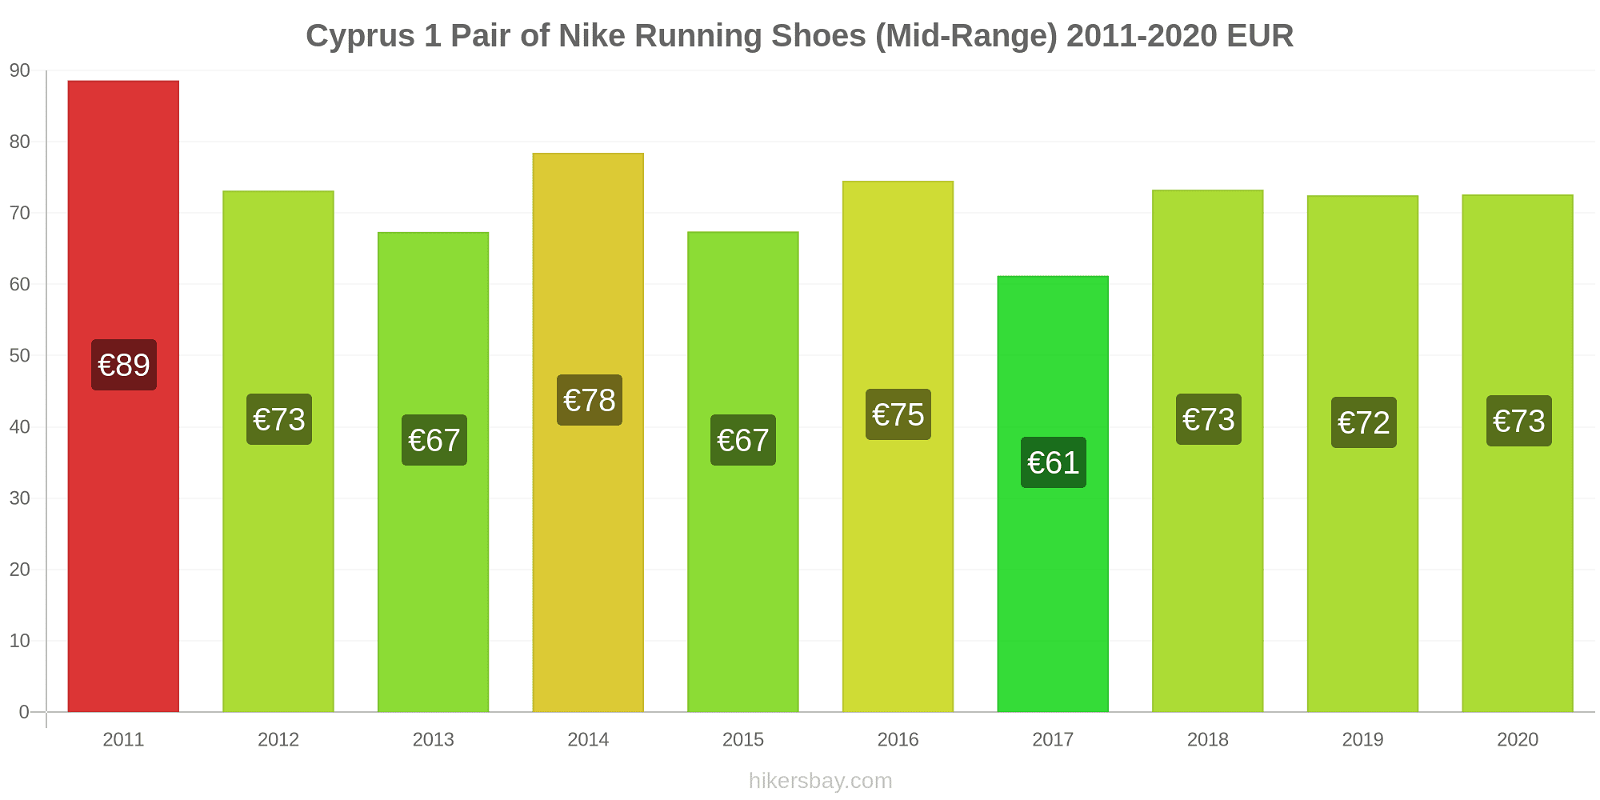 Cyprus price changes 1 Pair of Nike Running Shoes (Mid-Range) hikersbay.com